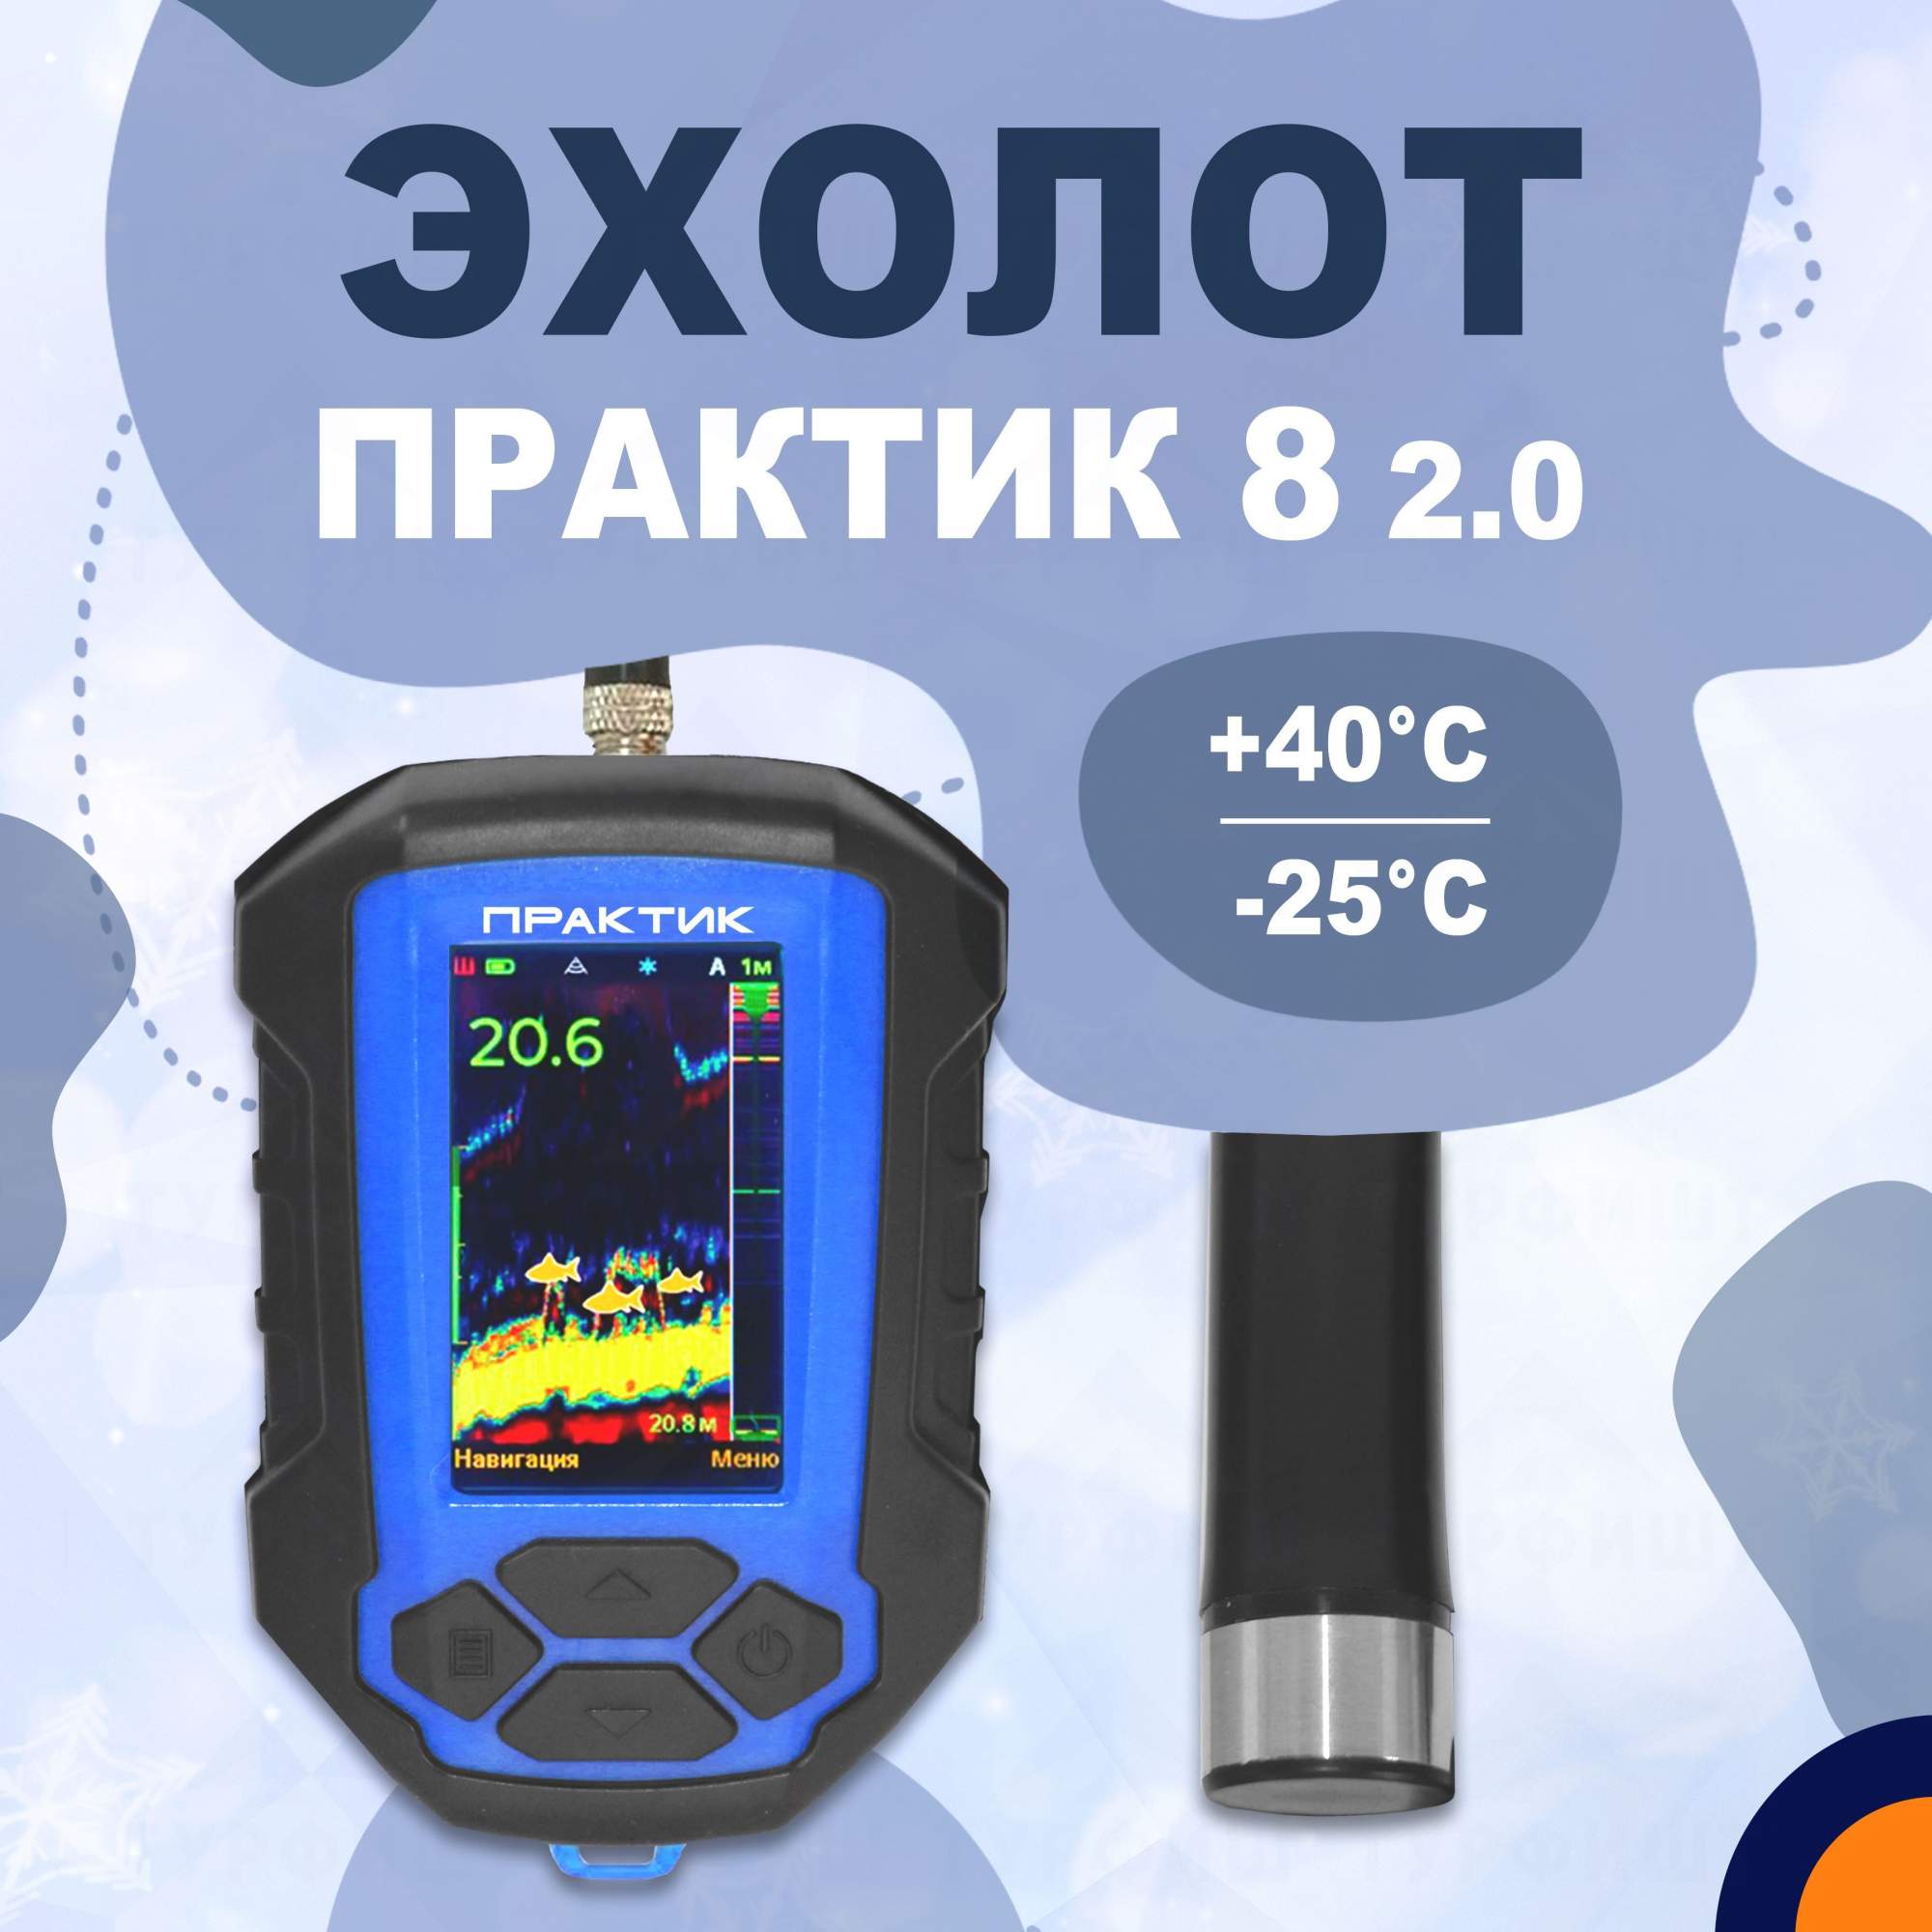 Эхолот Практик 8 2.0 версия - купить в Москве, цены на Мегамаркет | 600017424787